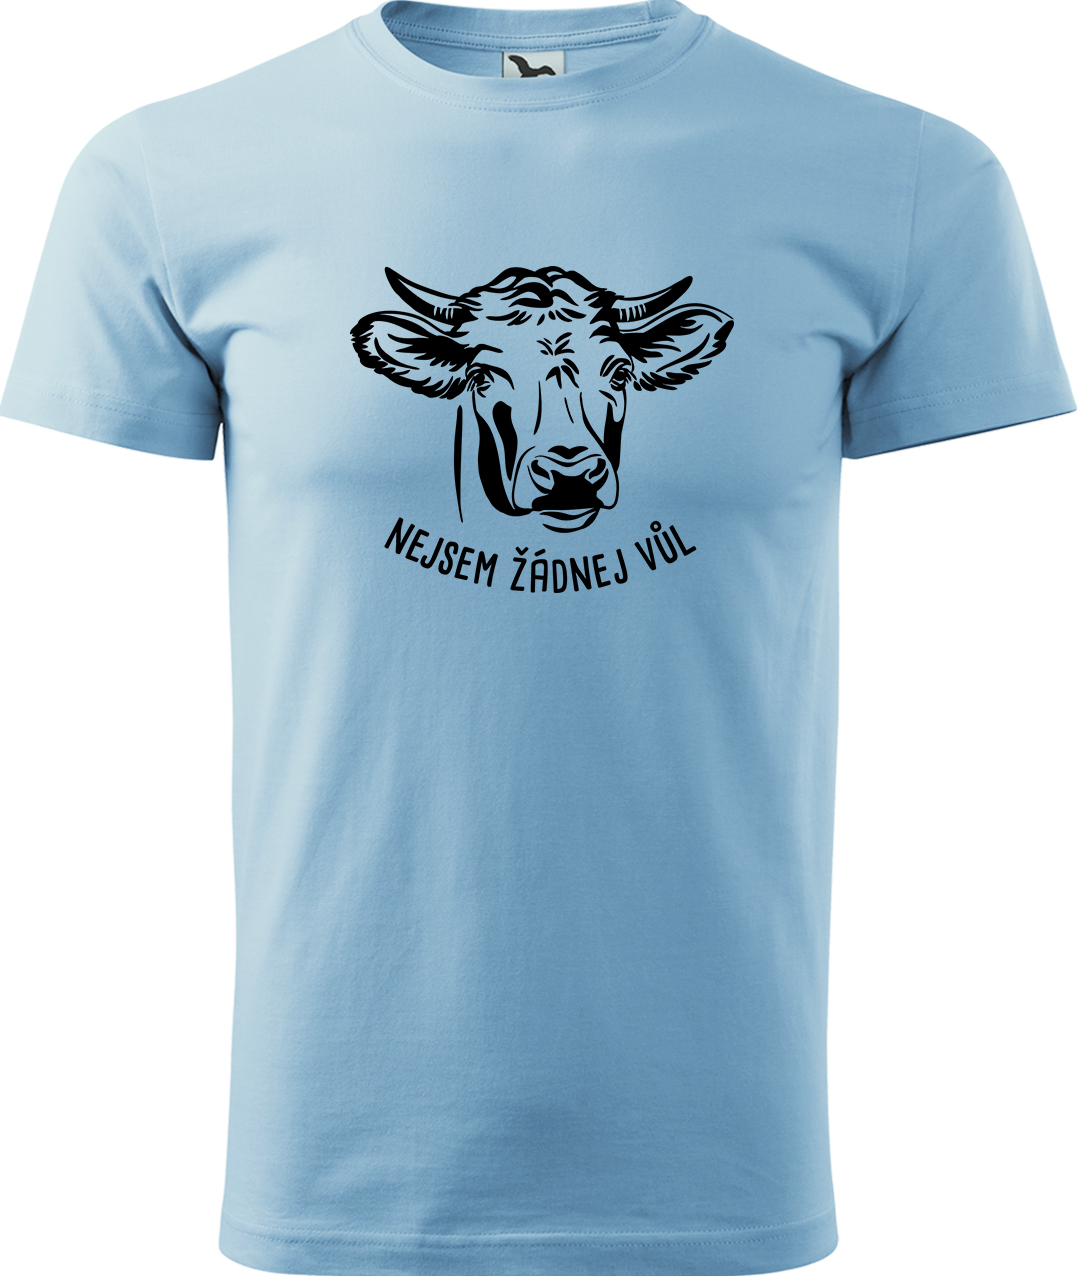 Pánské tričko s krávou - Nejsem žádnej vůl Velikost: M, Barva: Nebesky modrá (15), Střih: pánský